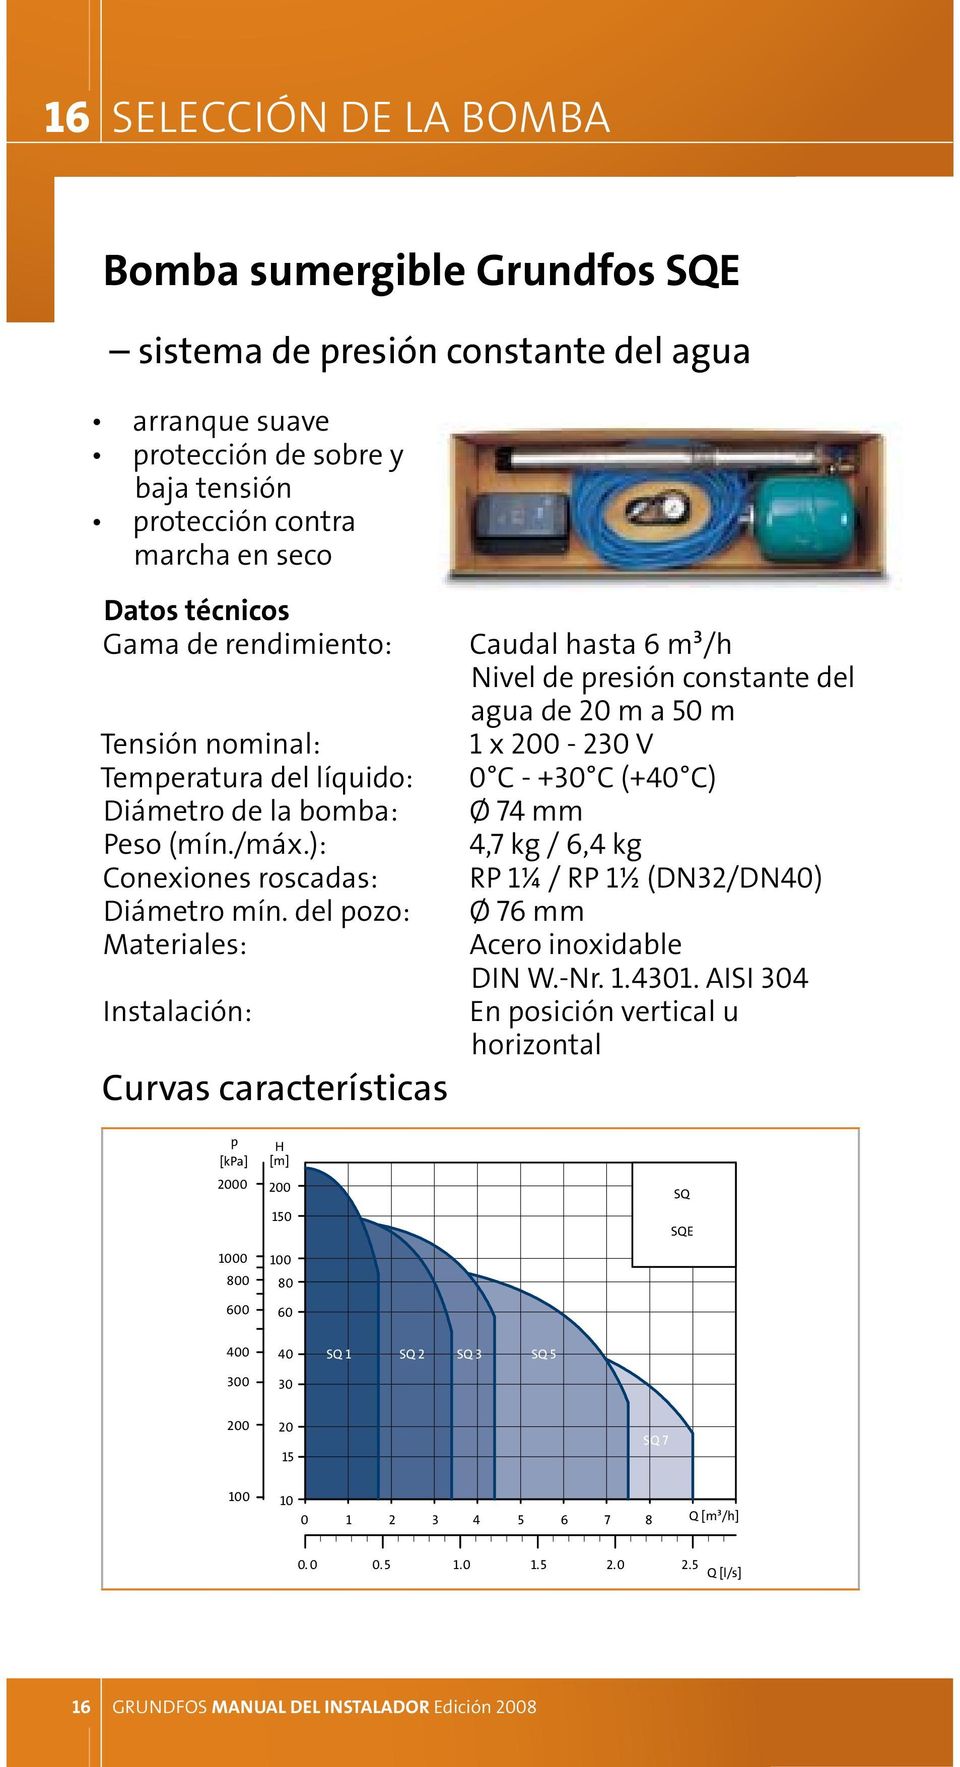 del pozo: Materiales: Instalación: Curvas características Caudal hasta 6 m³/h Nivel de presión constante del agua de 20 m a 50 m 1 x 200-230 V 0 C - +30 C (+40 C) Ø 74